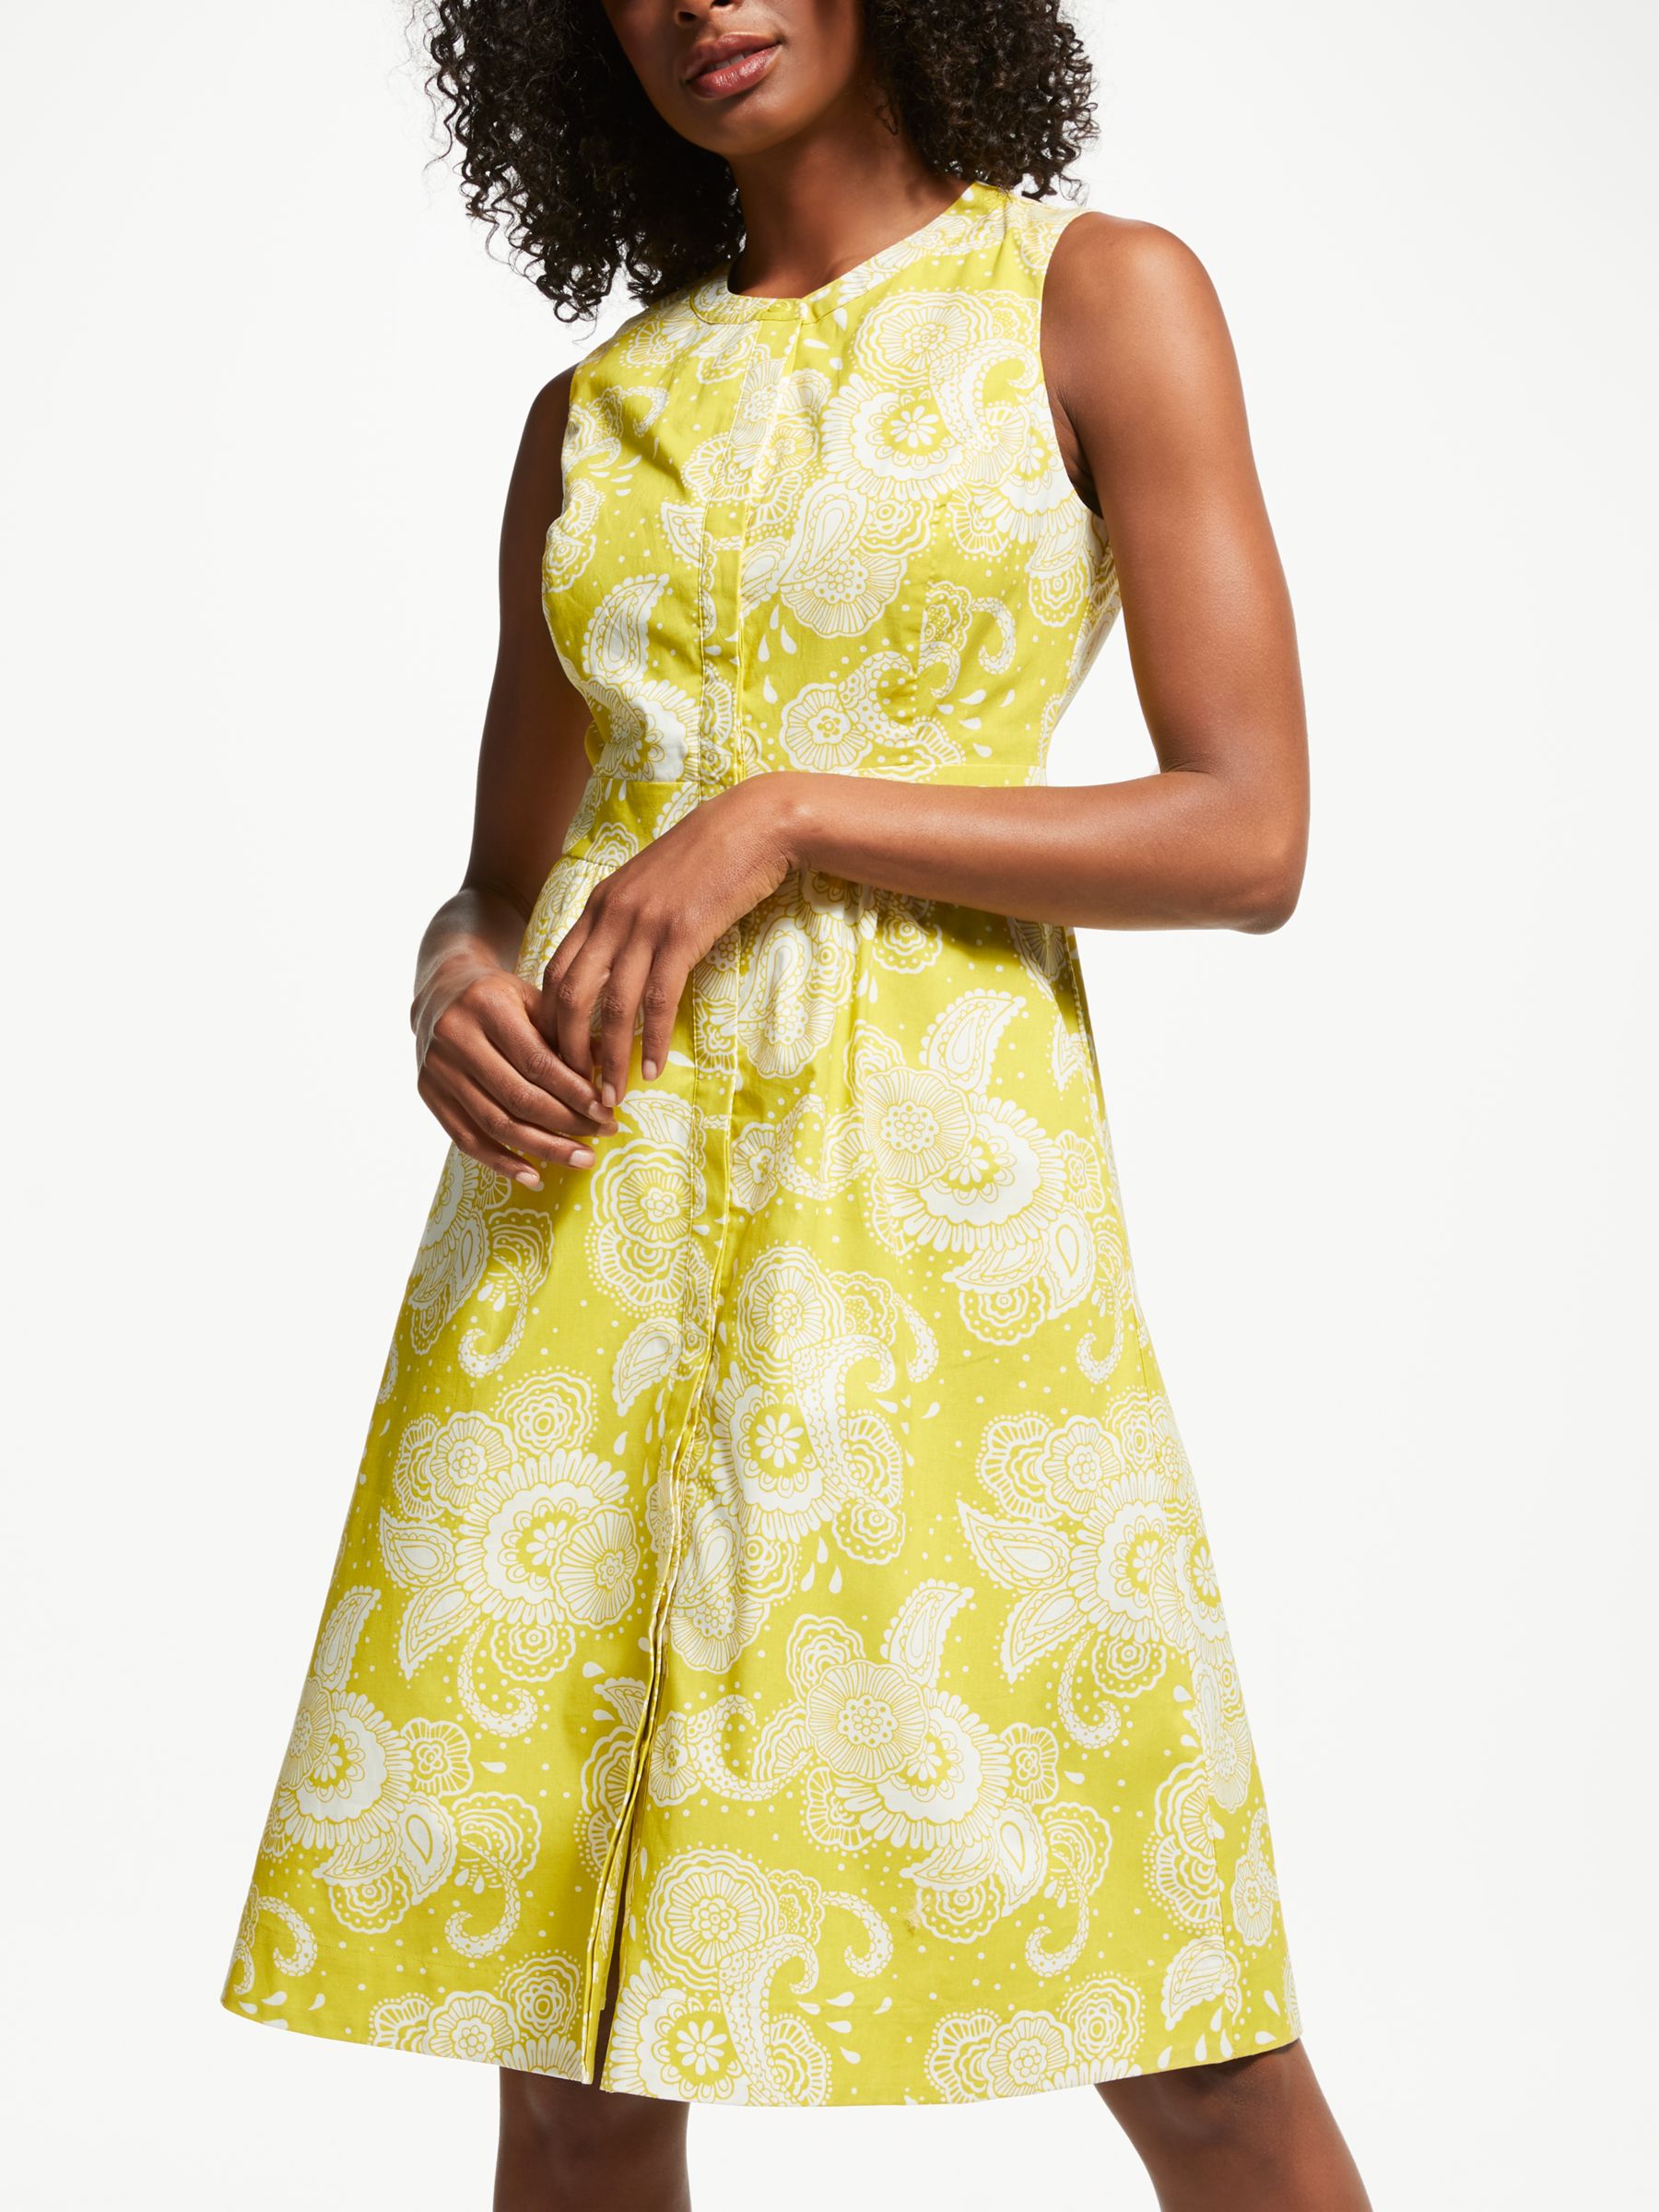 Boden Leila Sleeveless Shirt Dress, Mimosa Yellow